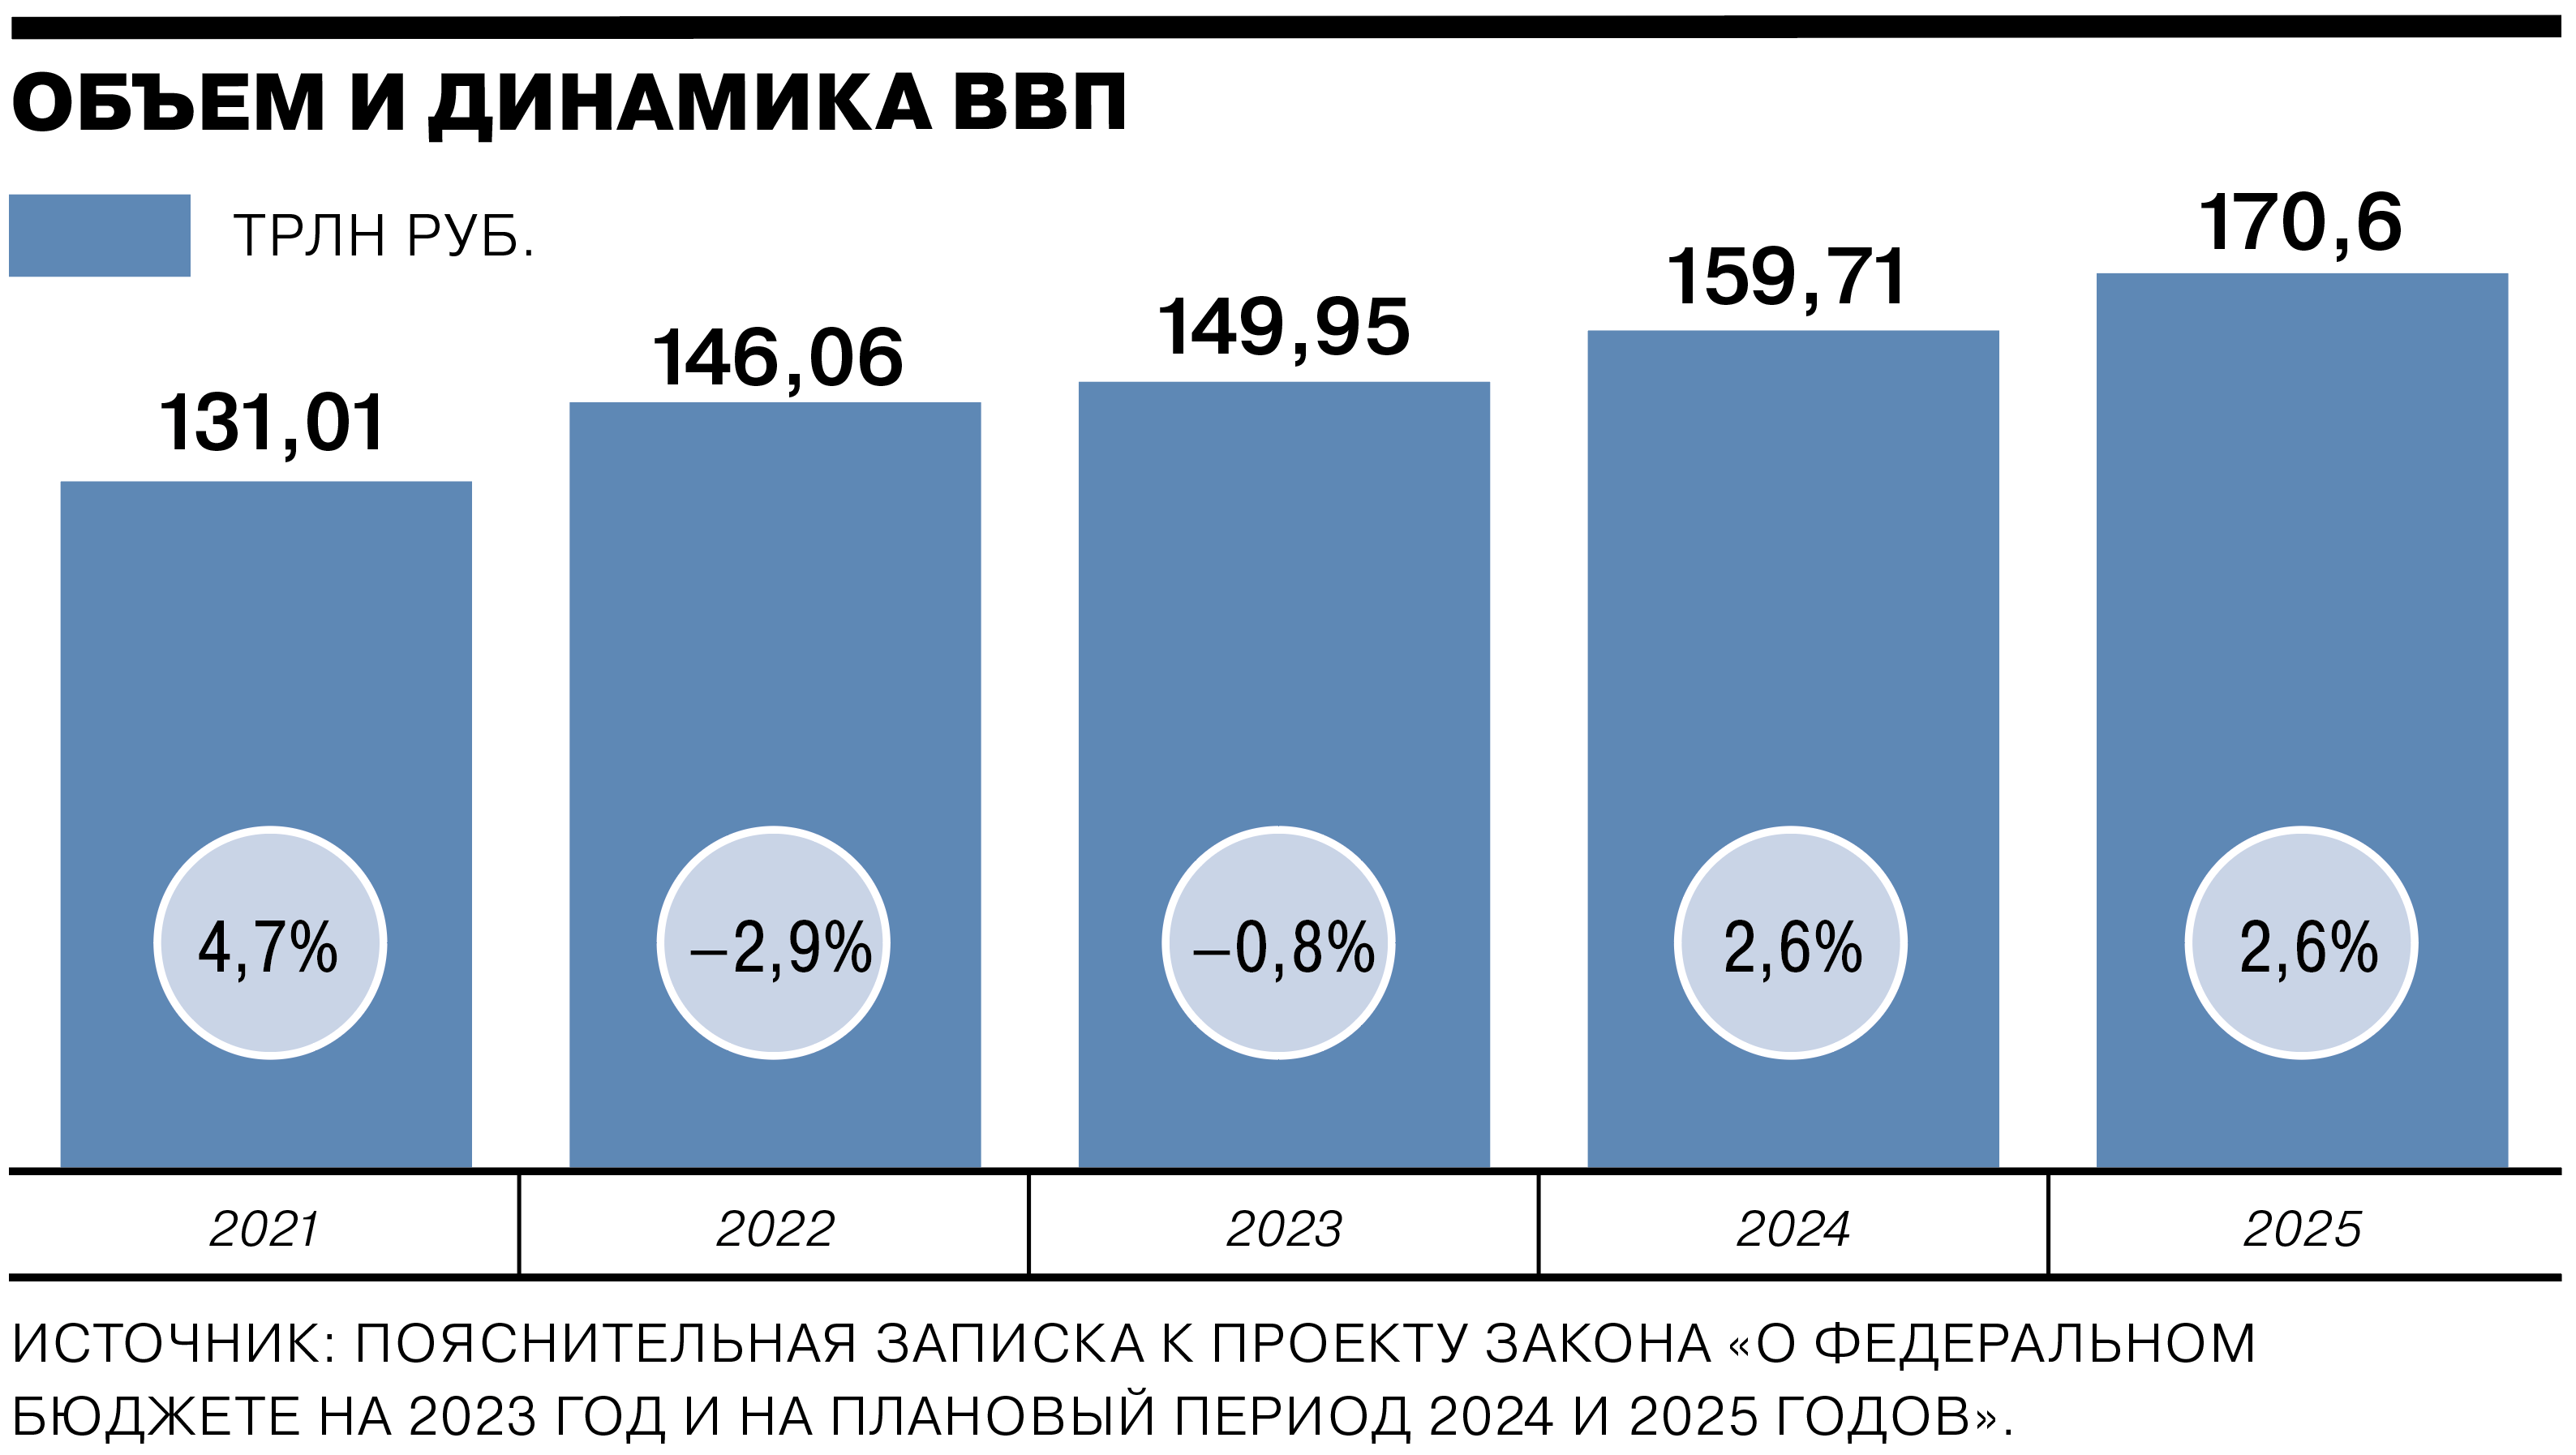 Экономика сегодня 2023. Динамика ВВП России 2023. ВВП России график 2023. Бюджет РФ на 2023 год. Федеральный бюджет России на 2023 год.